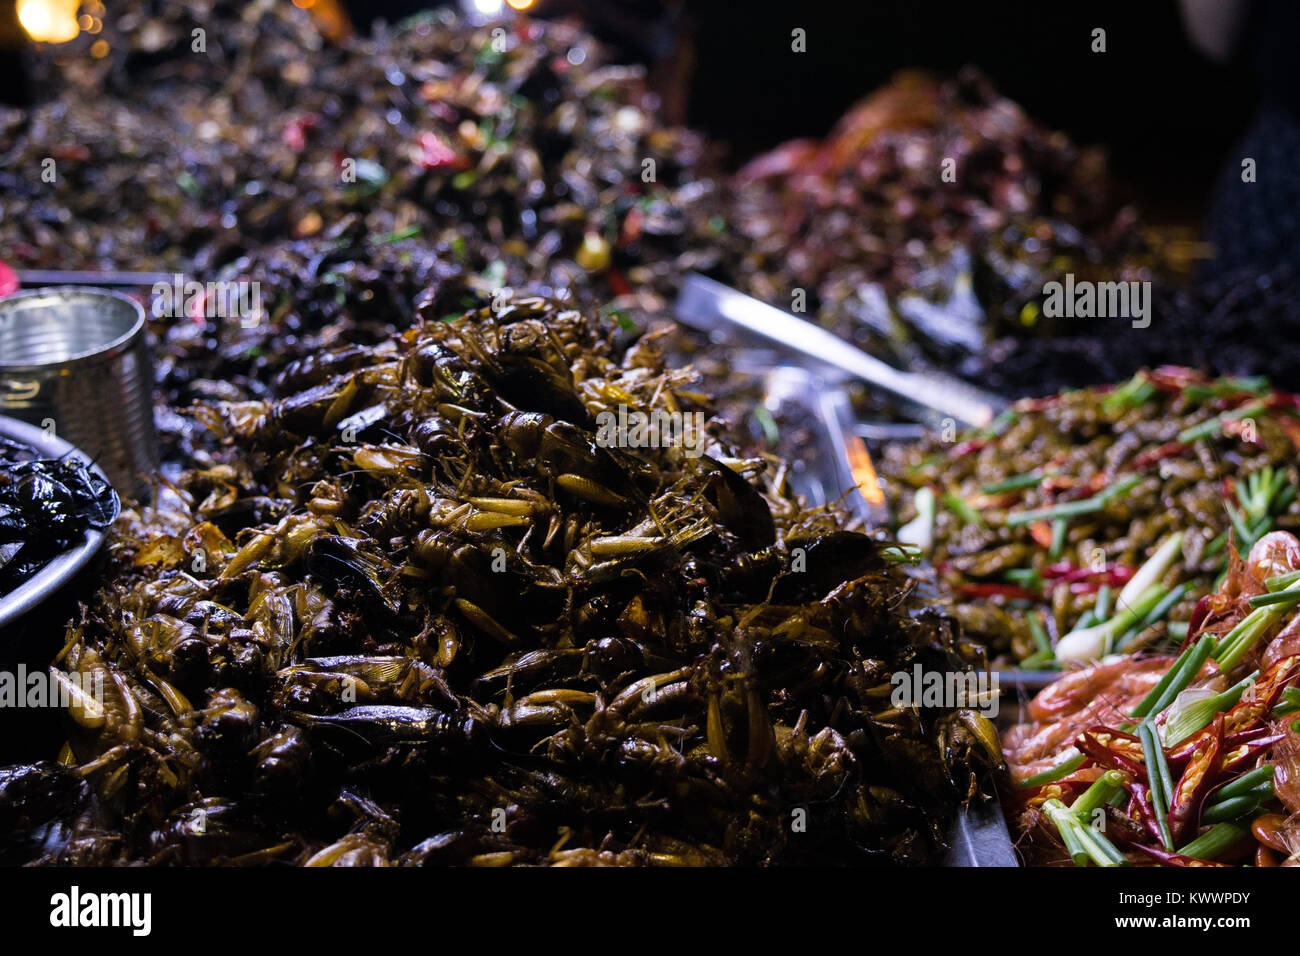 Ein Stall verkaufen Asiatische Küche Street Food, einschließlich gebratene Insekten grillen Schaben Garnelen Wachteleier in Phnom Penh, Kambodscha, Südostasien Stockfoto